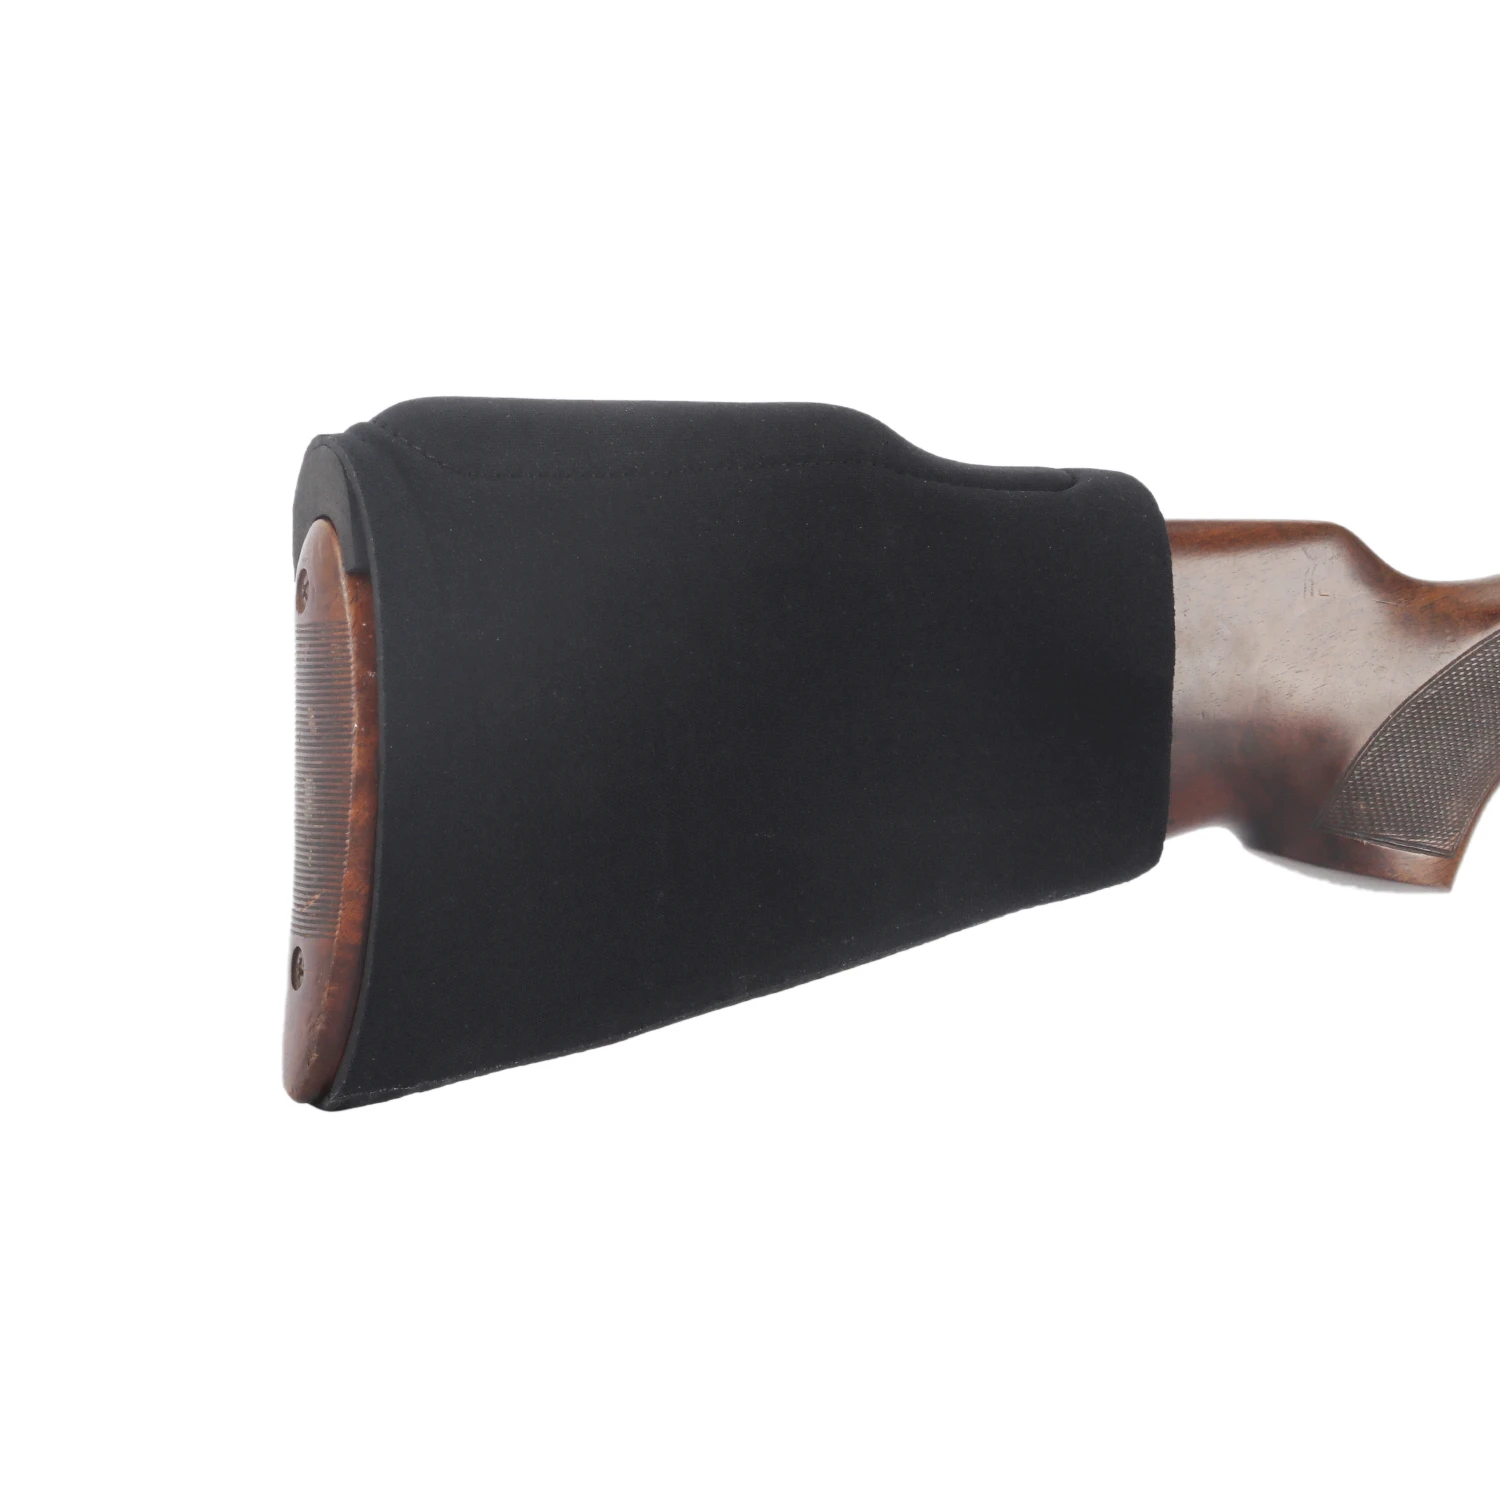 Tourbon Tactical Hunting Gun Comb Cheek Rest Raiser Kit Gun Buttstock Non-slip Cover Neoprene Slip On w/ 3 Pads Inserts Shooting